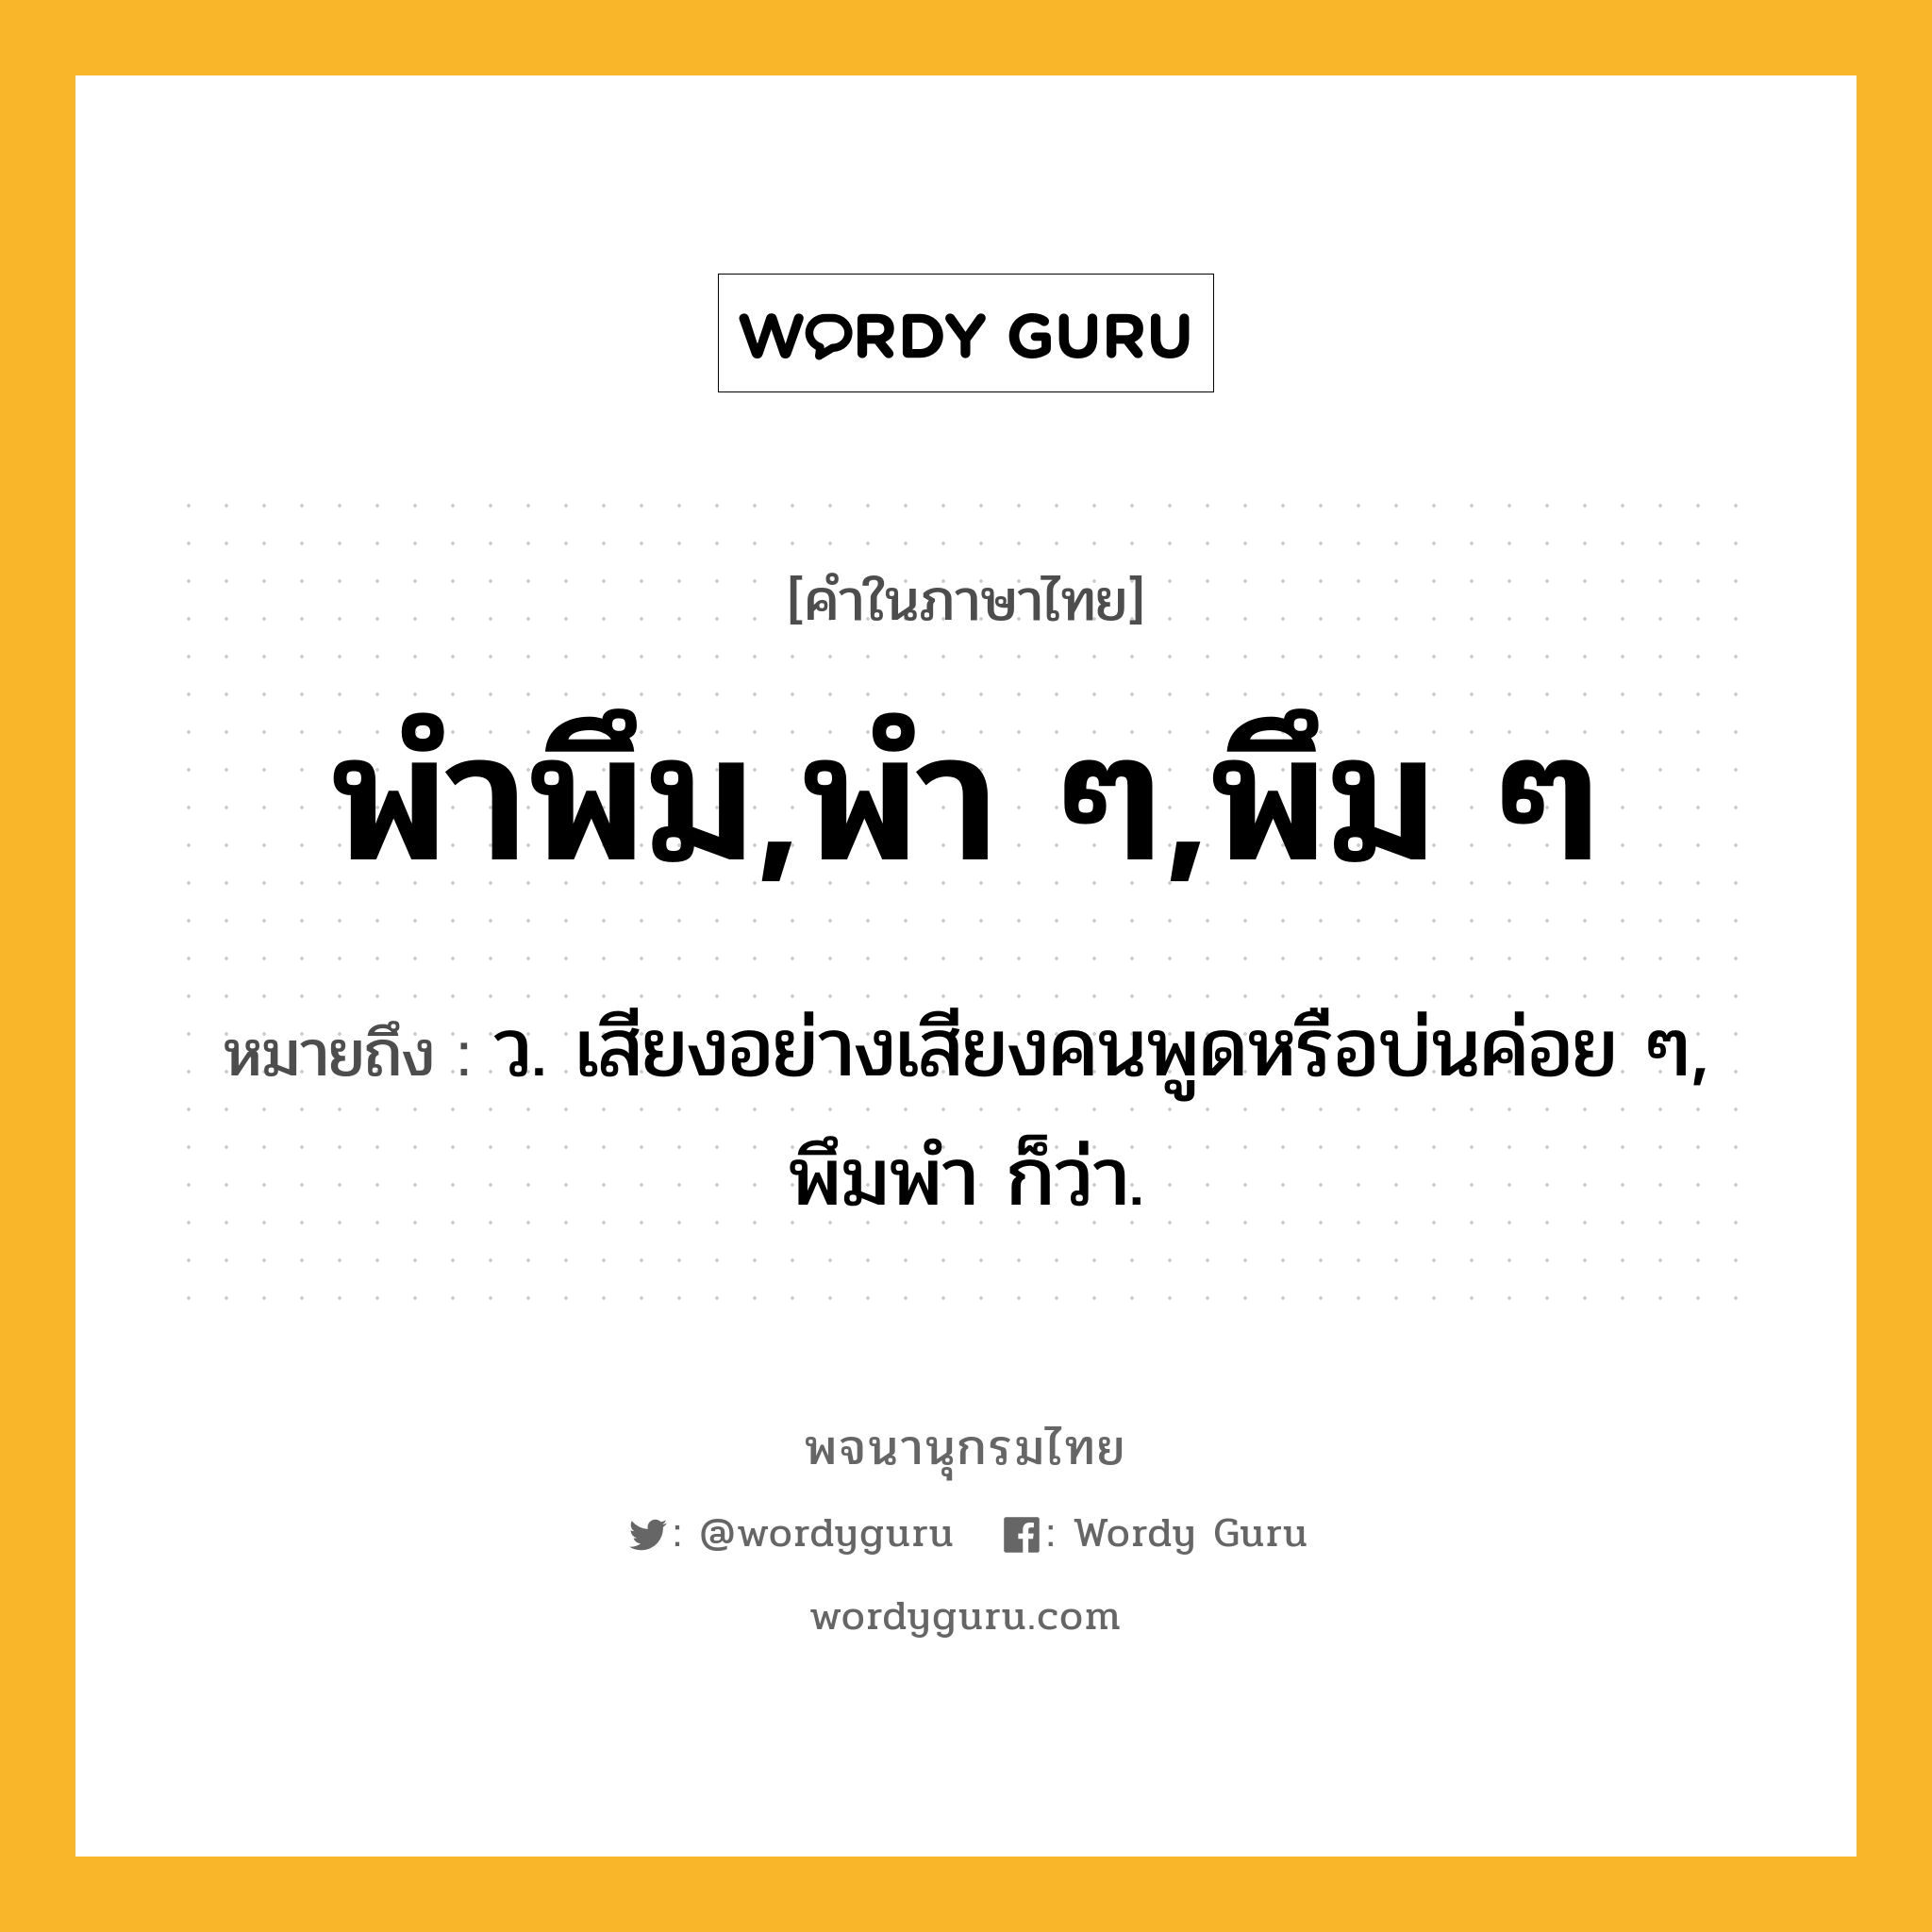 พำพึม,พำ ๆ,พึม ๆ ความหมาย หมายถึงอะไร?, คำในภาษาไทย พำพึม,พำ ๆ,พึม ๆ หมายถึง ว. เสียงอย่างเสียงคนพูดหรือบ่นค่อย ๆ, พึมพํา ก็ว่า.